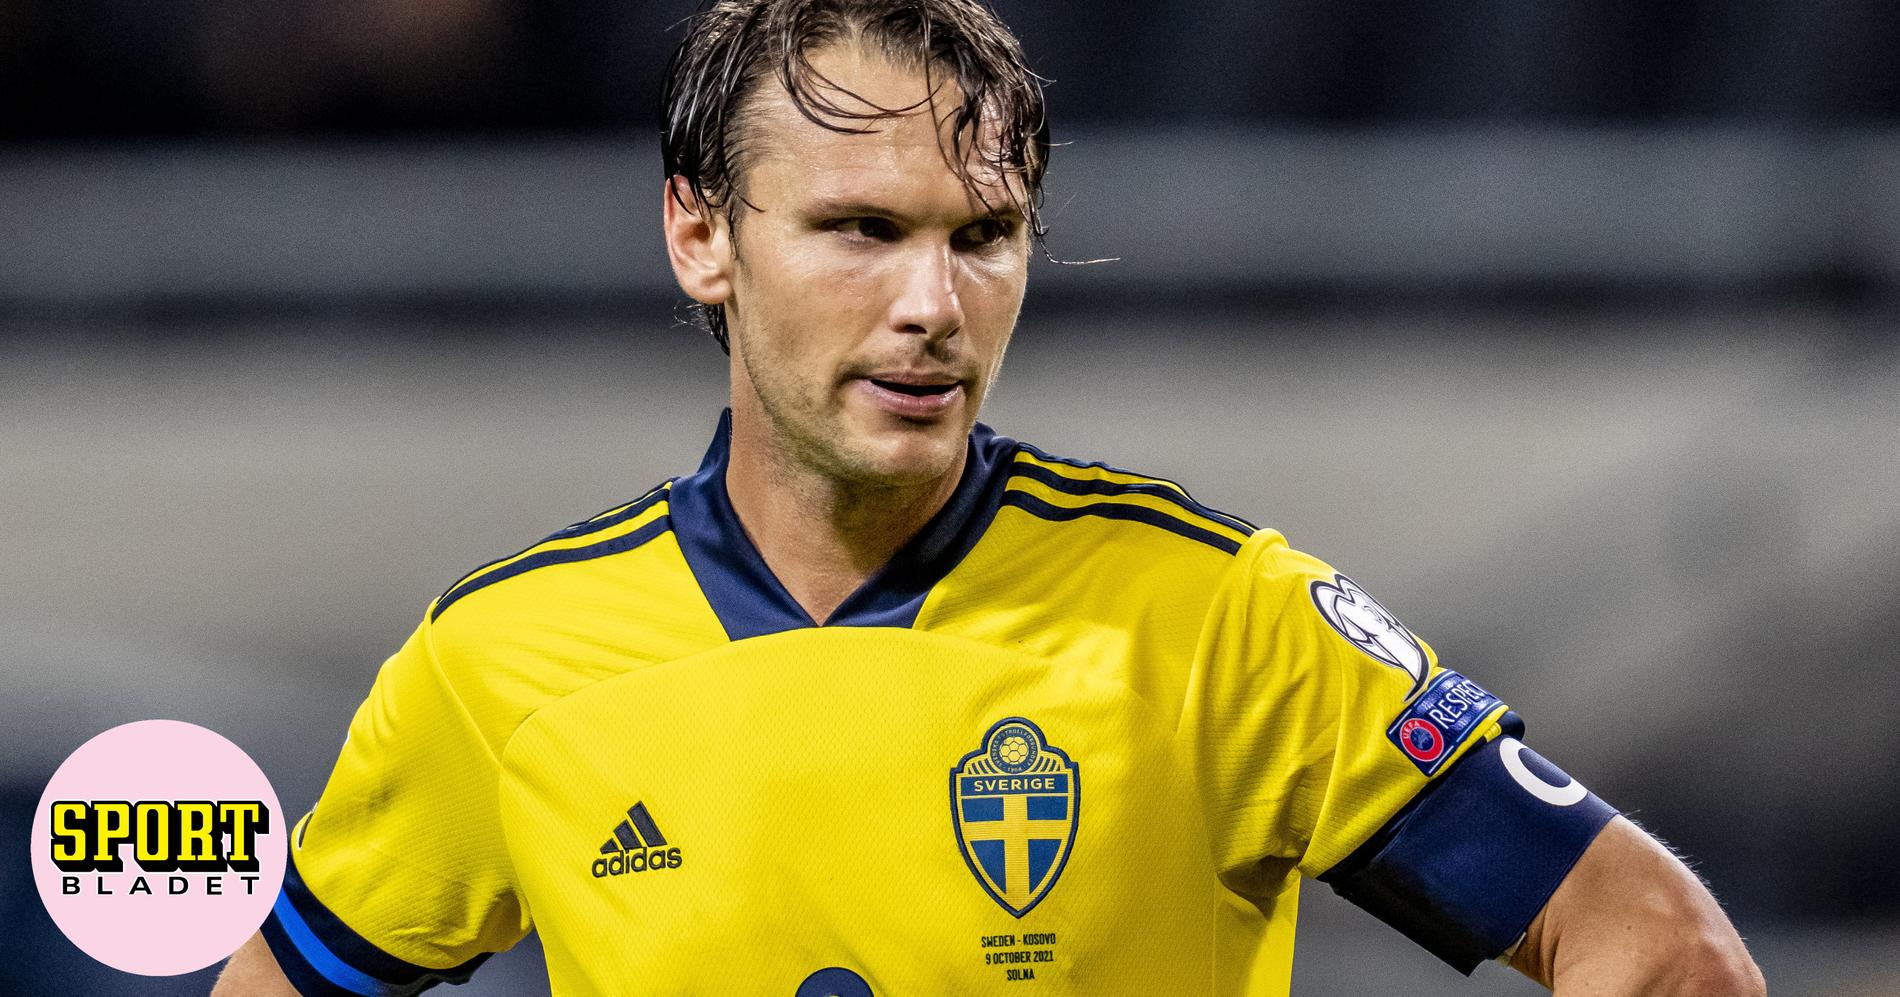 Uppgifter: Albin Ekdal är skadad efter landslagspel